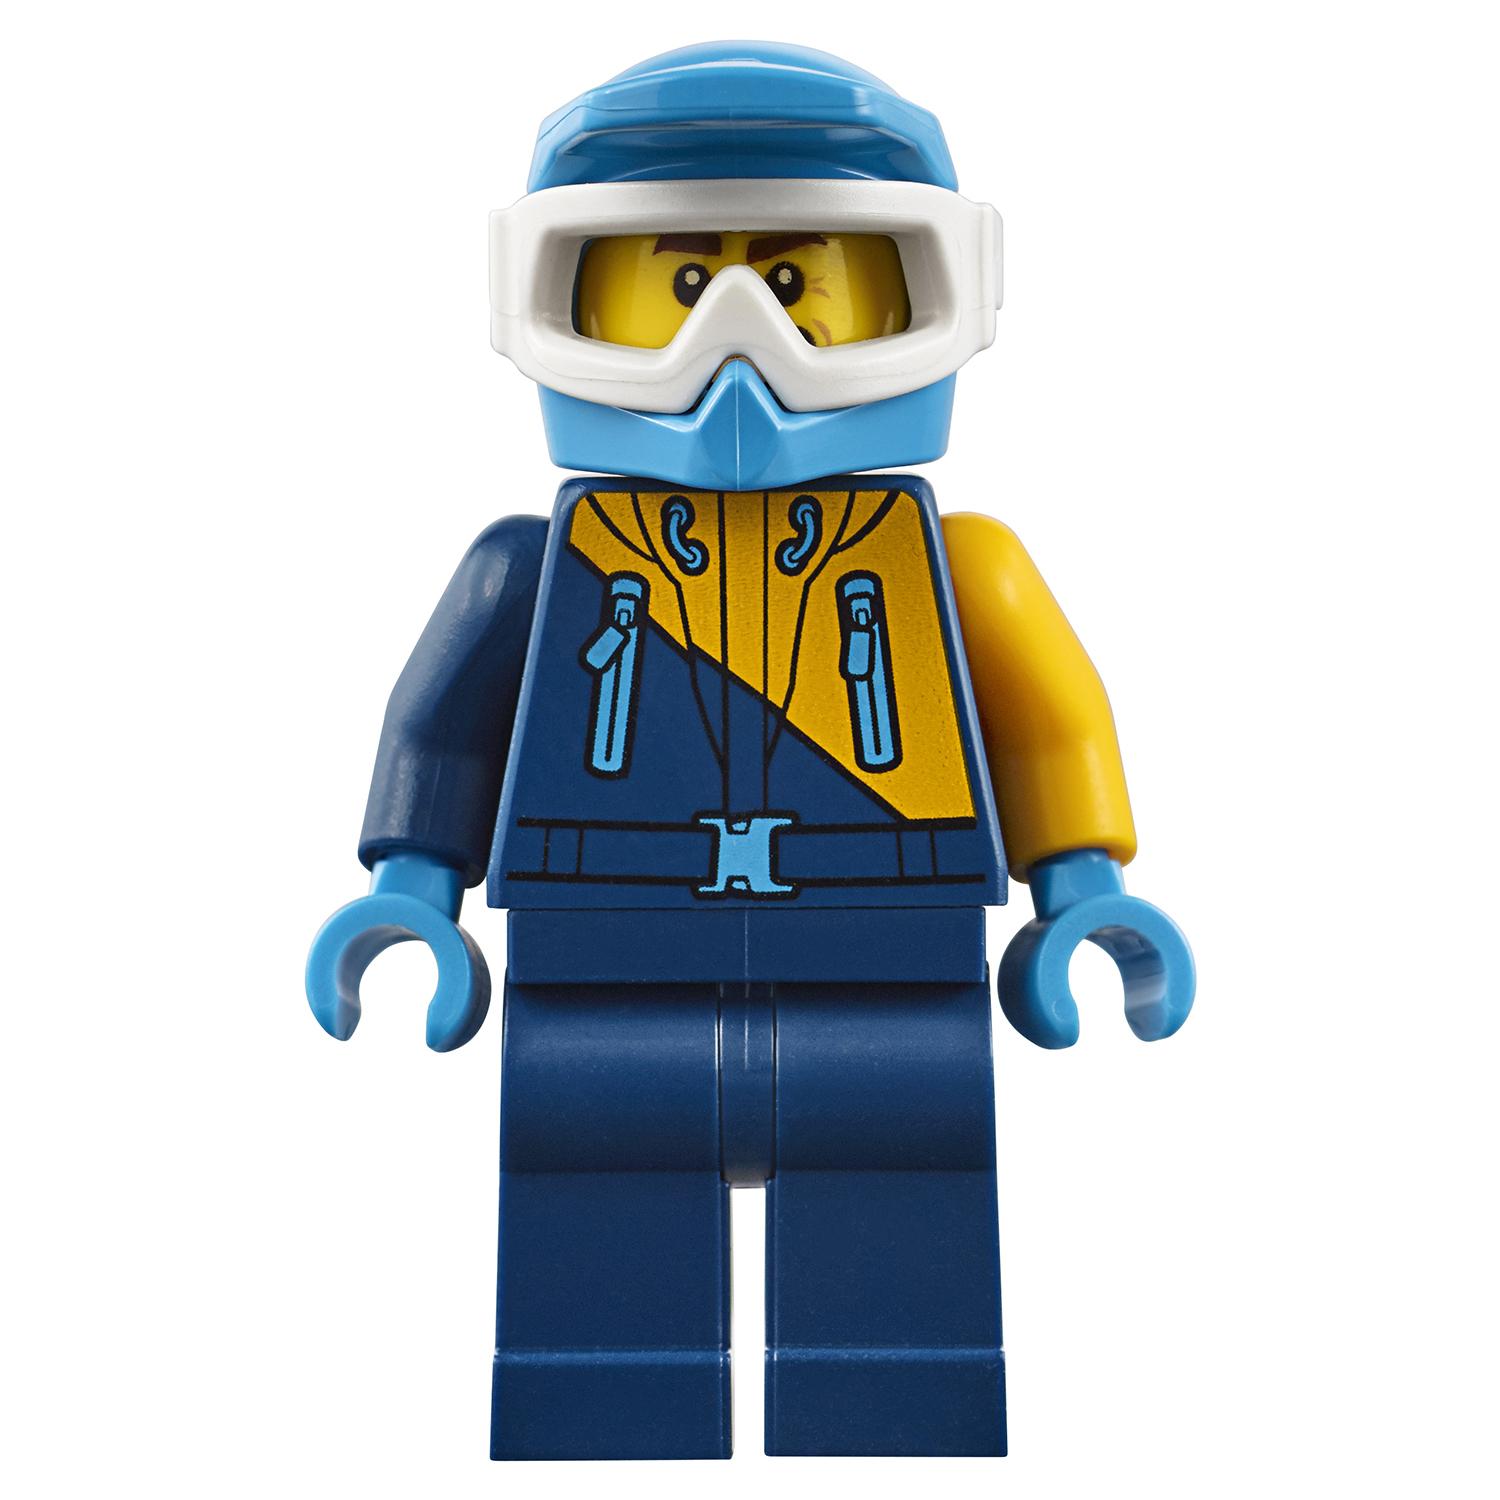 Конструктор Lego City - Грузовик ледовой разведки  